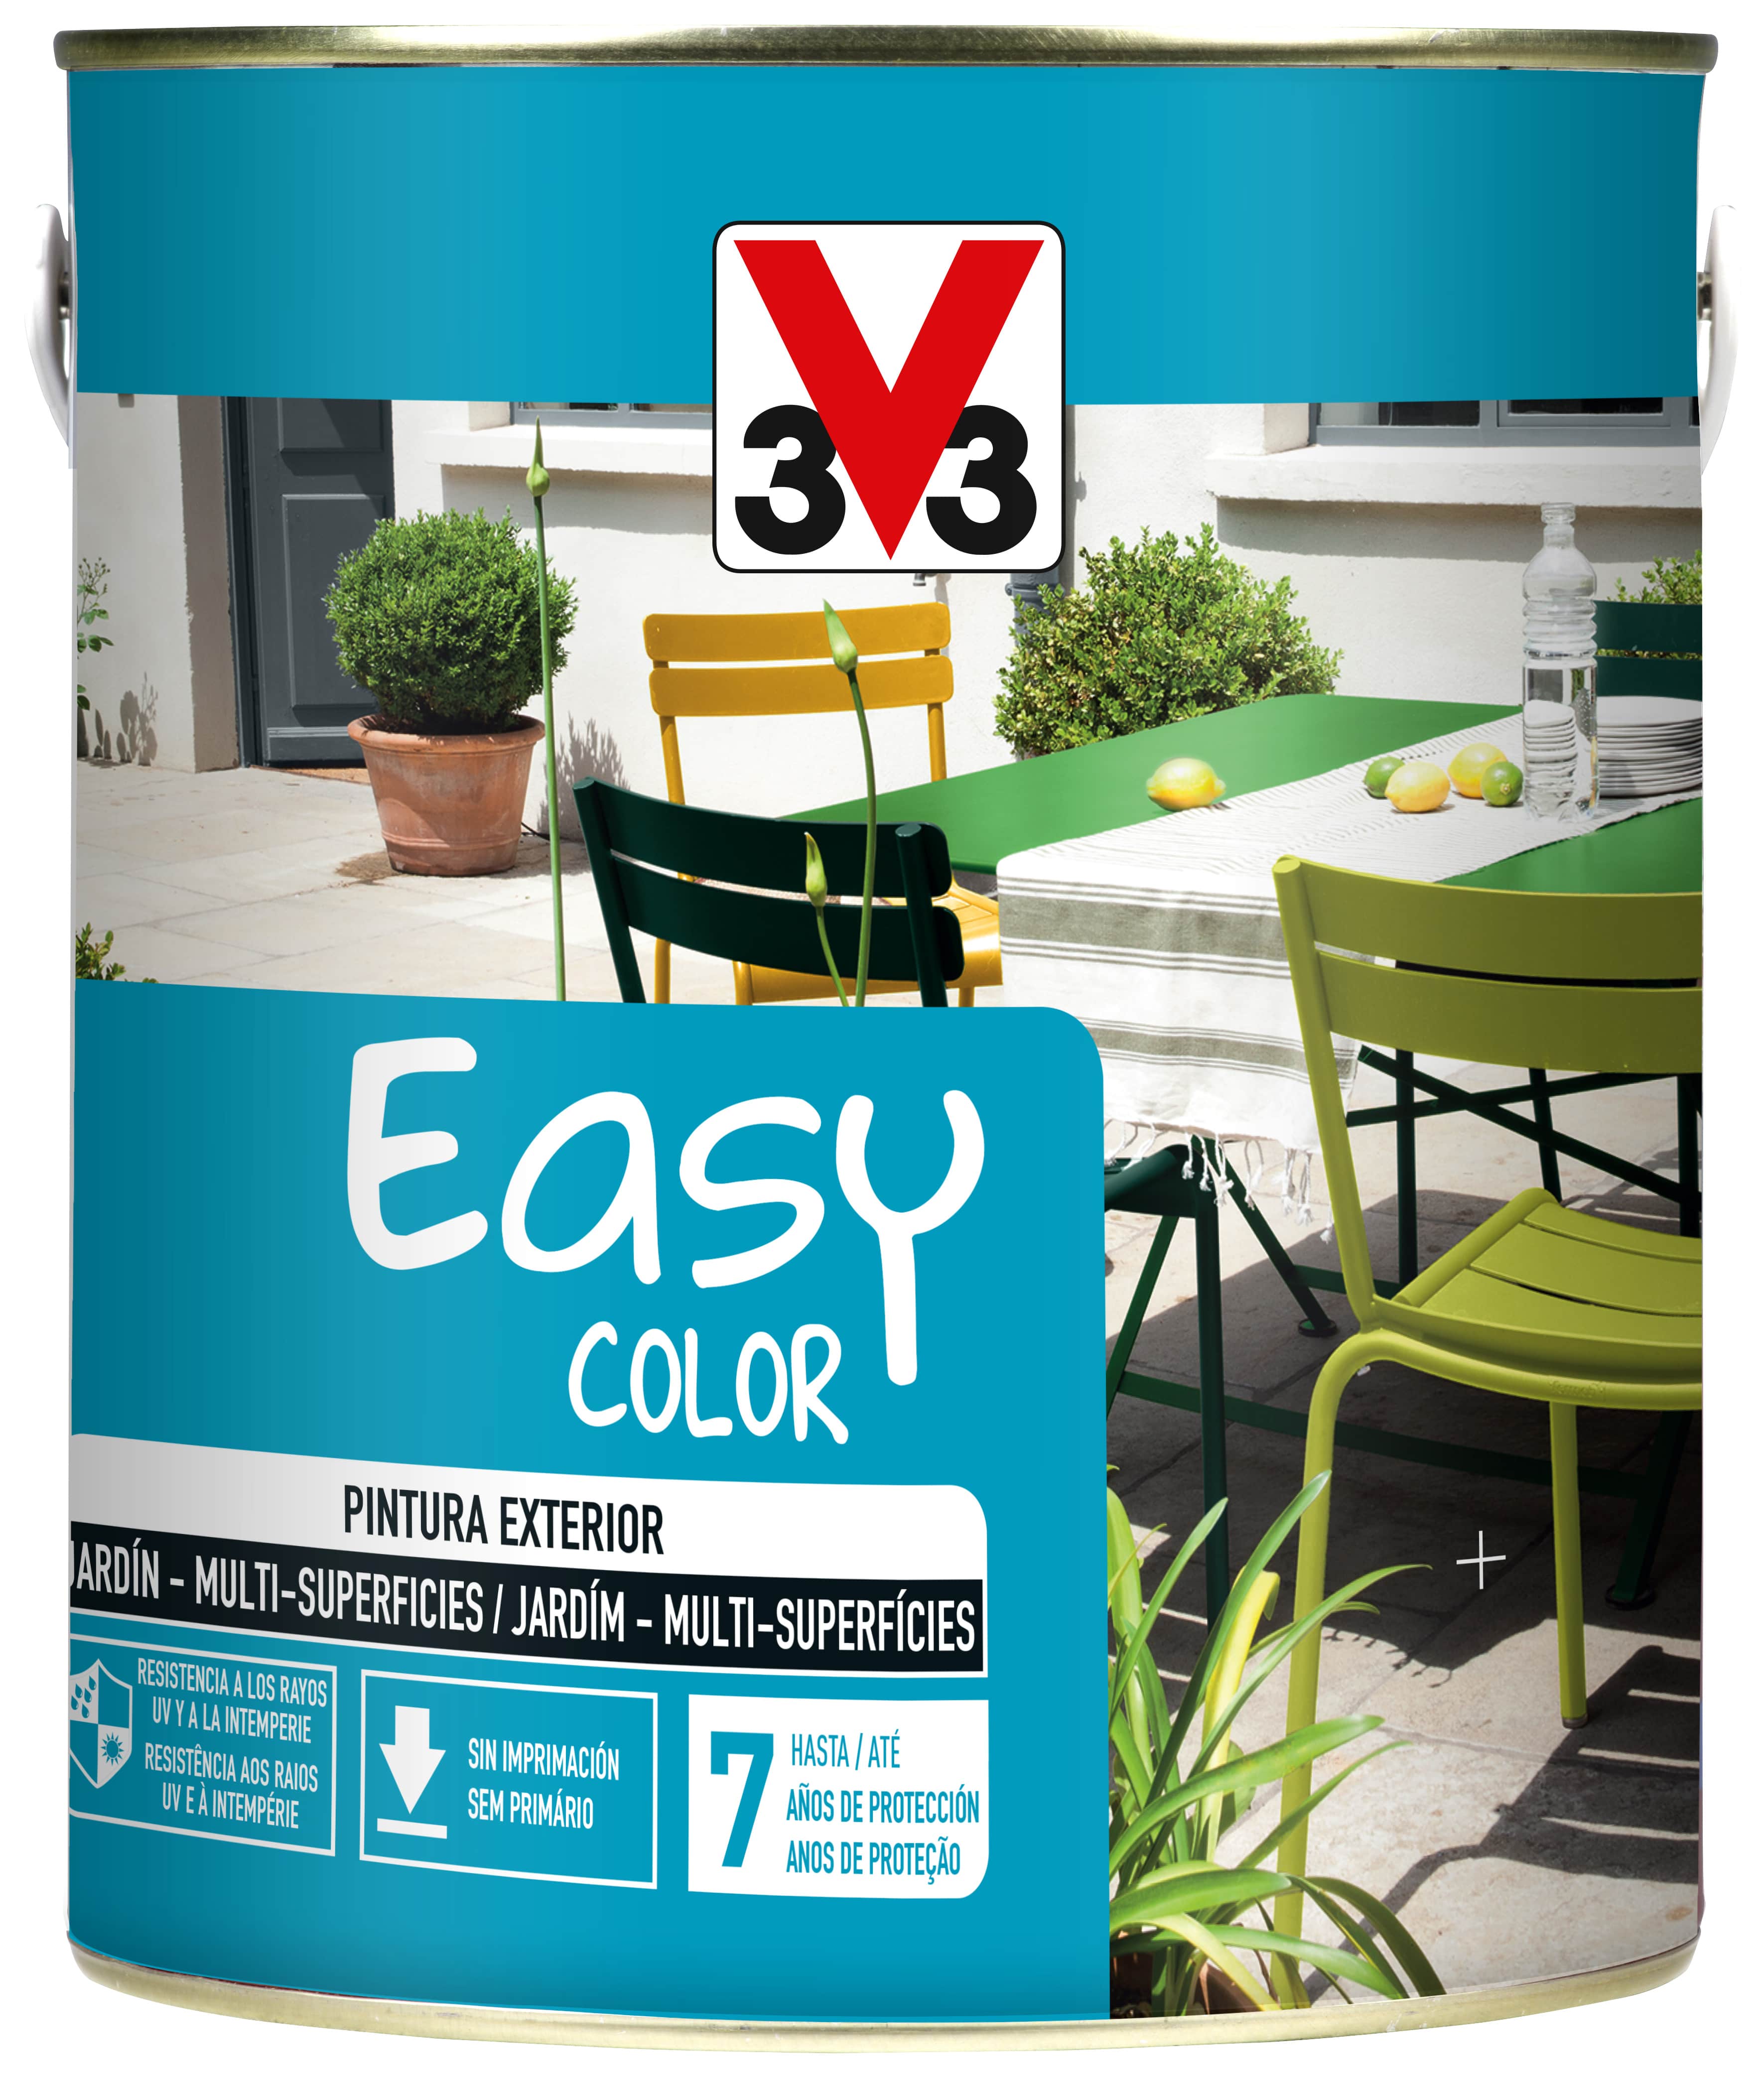 V33 - Easy Color Acetinado Preto 2.5L